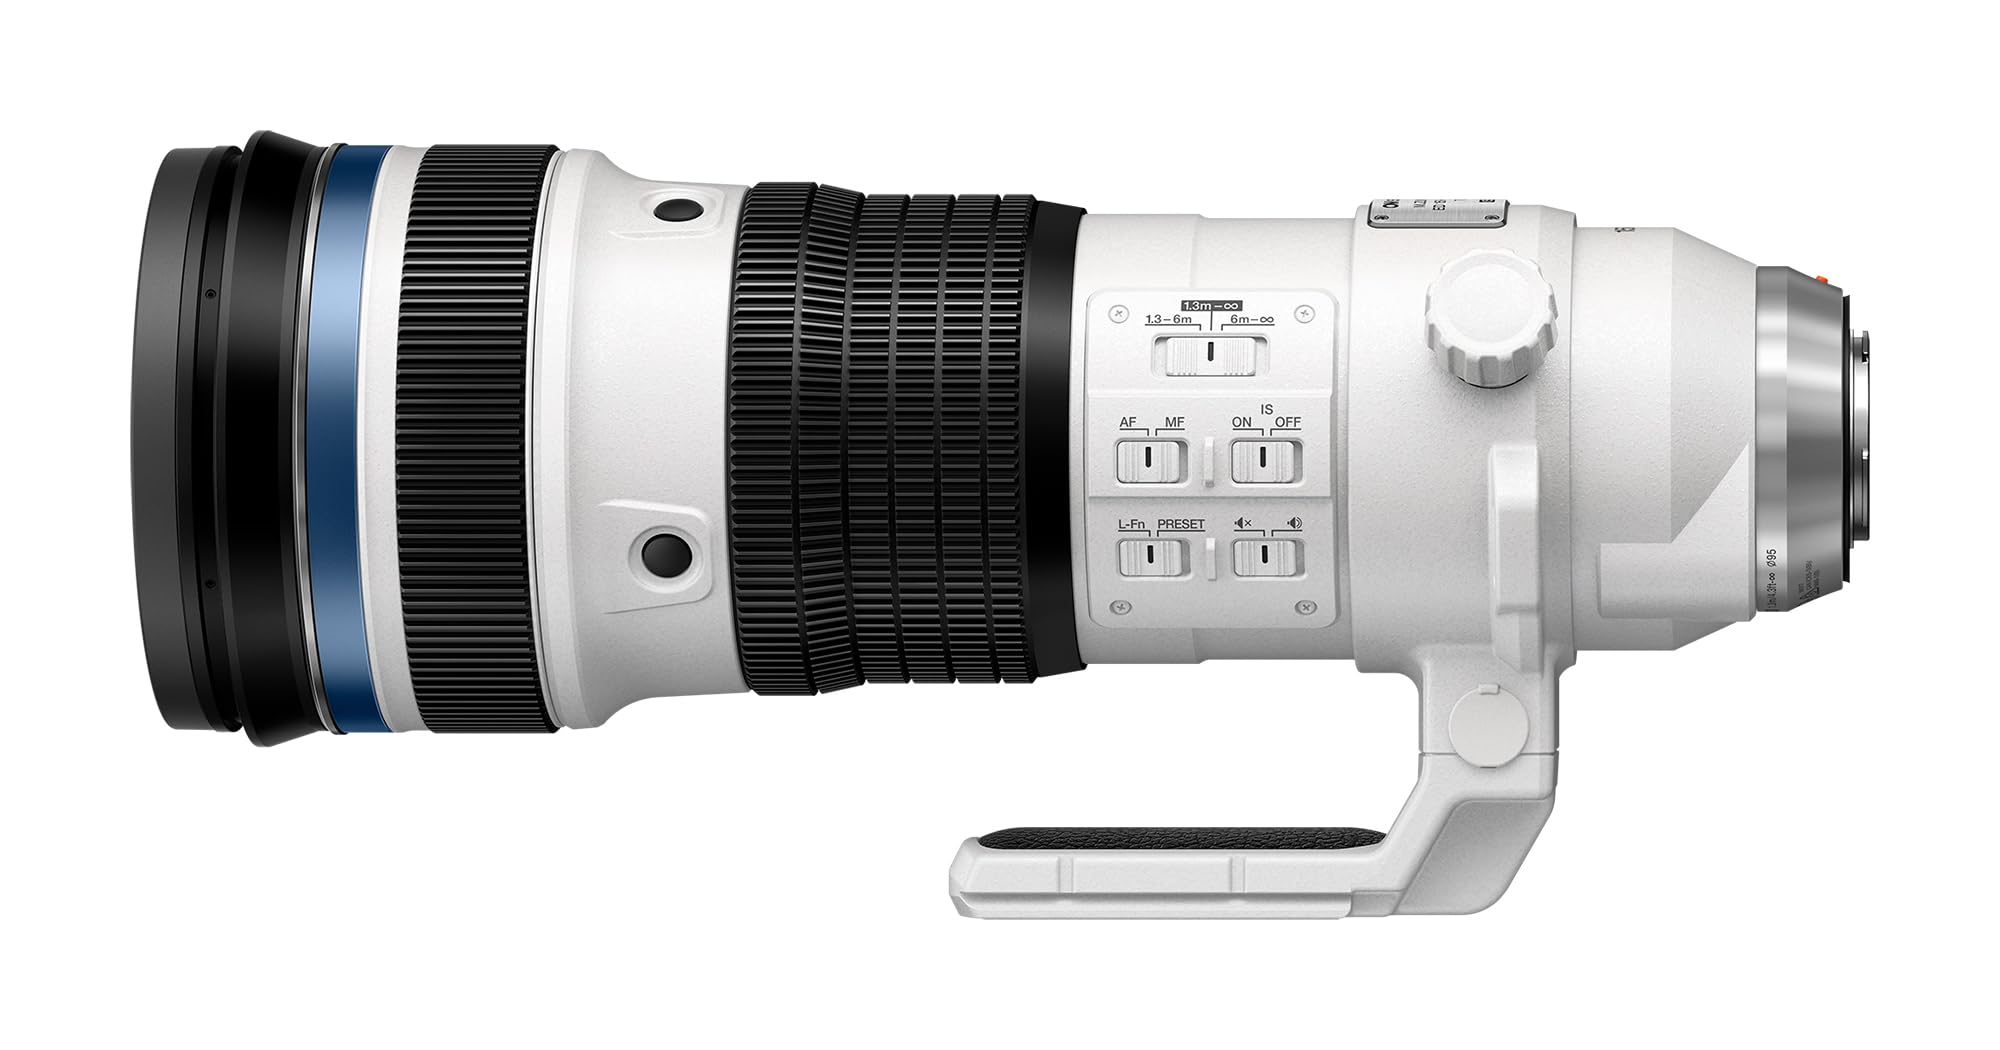 OM SYSTEM M.Zuiko Digital ED 150-400mm F4.5 TC1.25x is PRO Lens